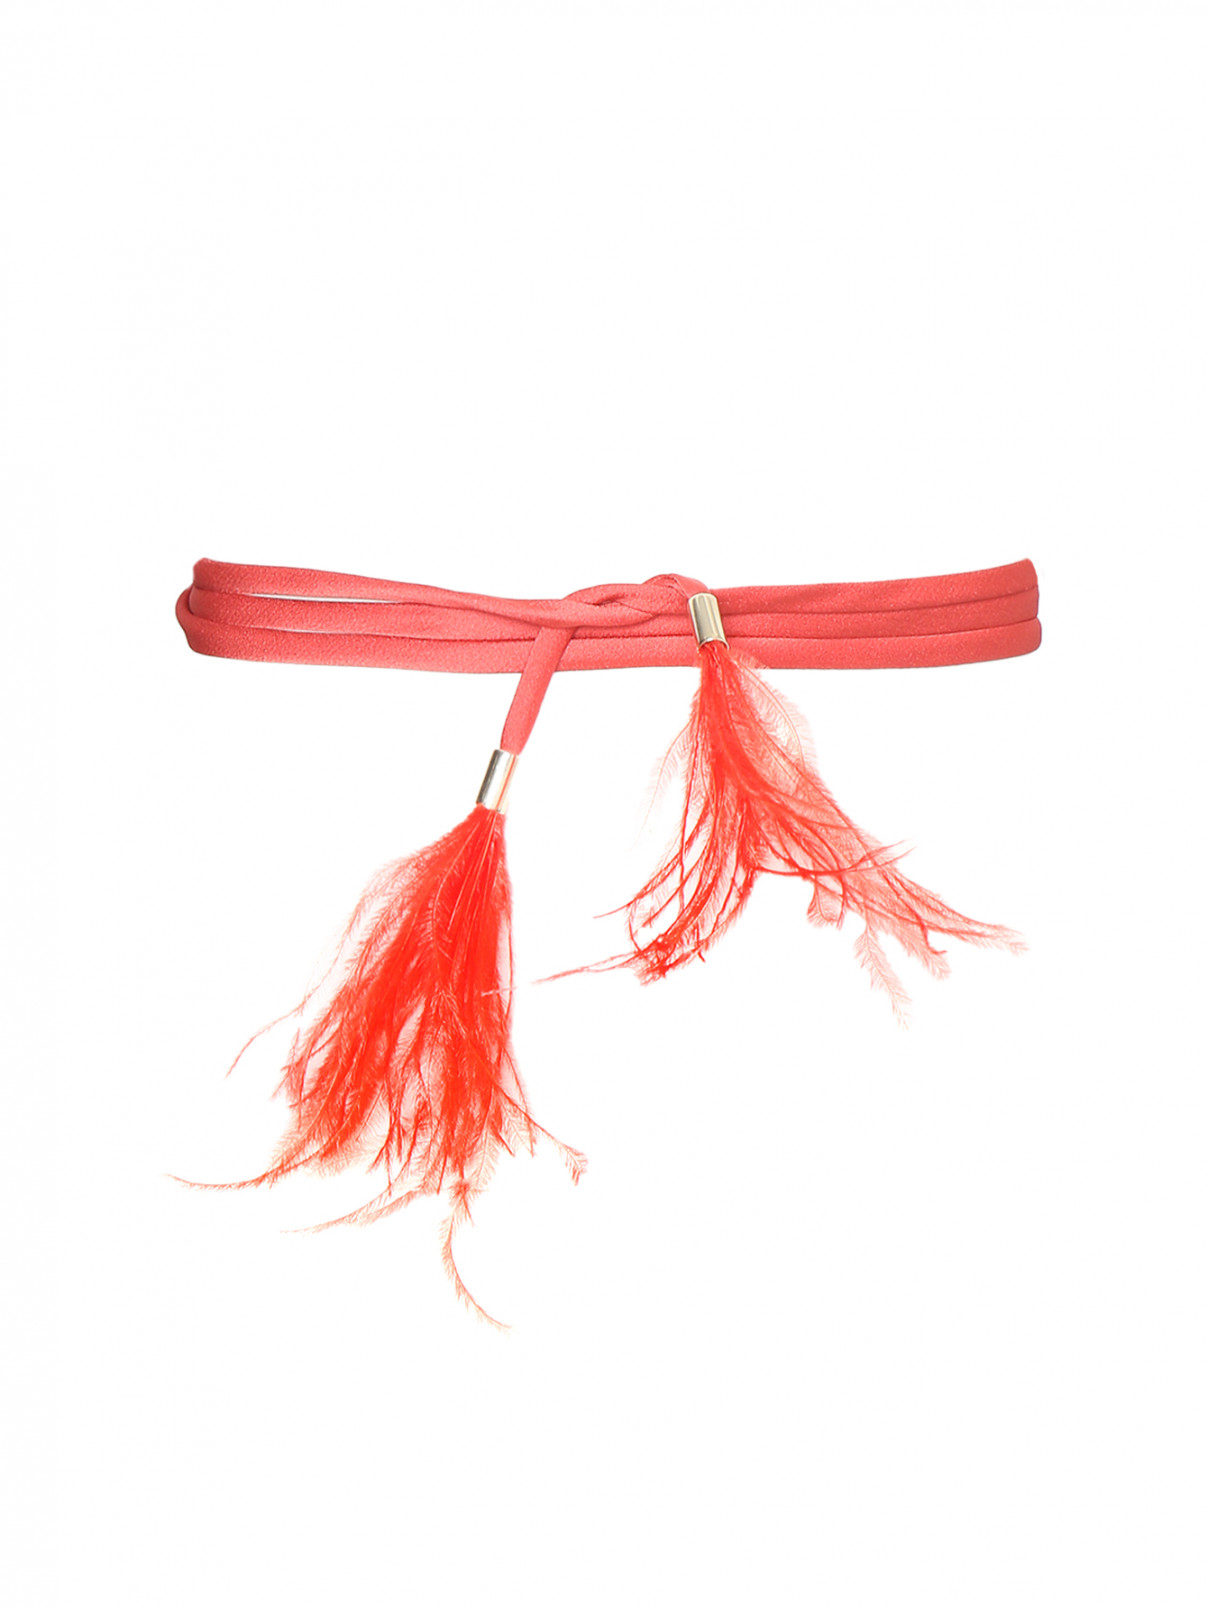 Пояс из текстиля декорированный перьями Marina Rinaldi  –  Общий вид  – Цвет:  Оранжевый